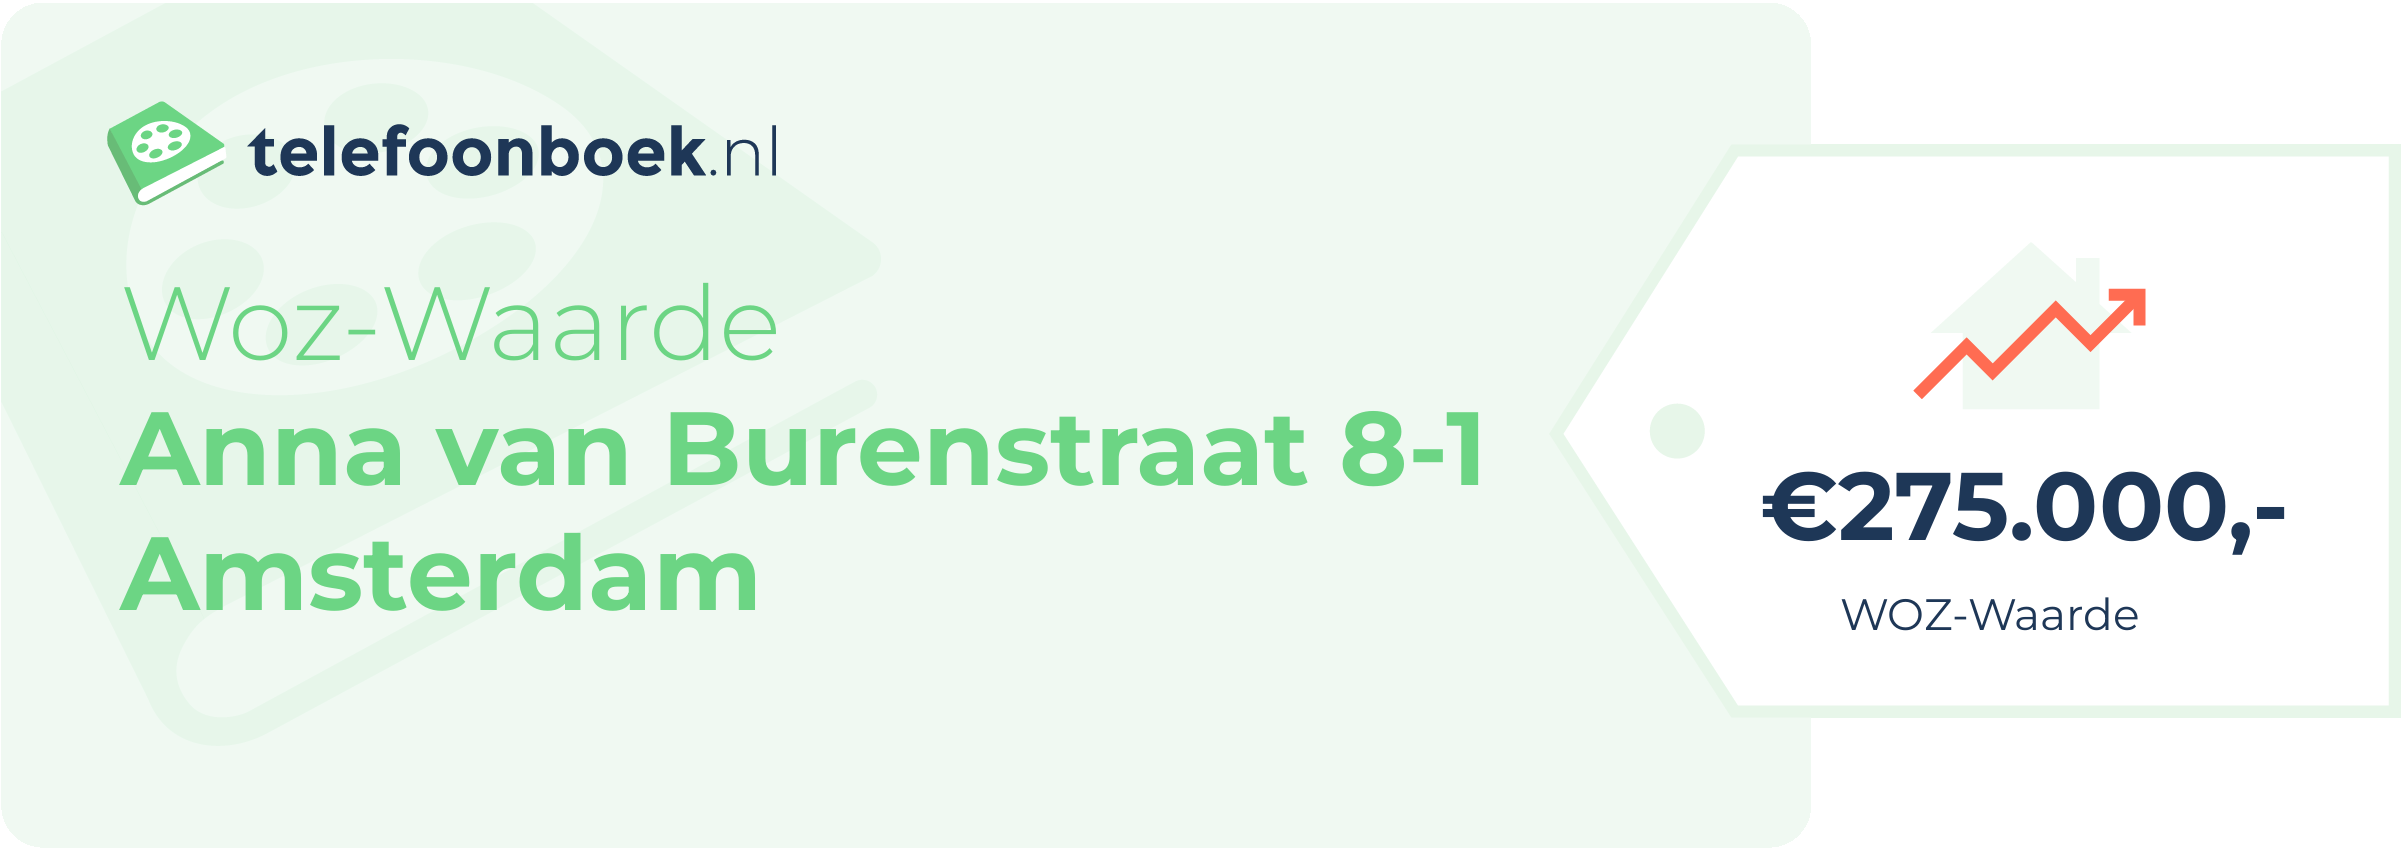 WOZ-waarde Anna Van Burenstraat 8-1 Amsterdam